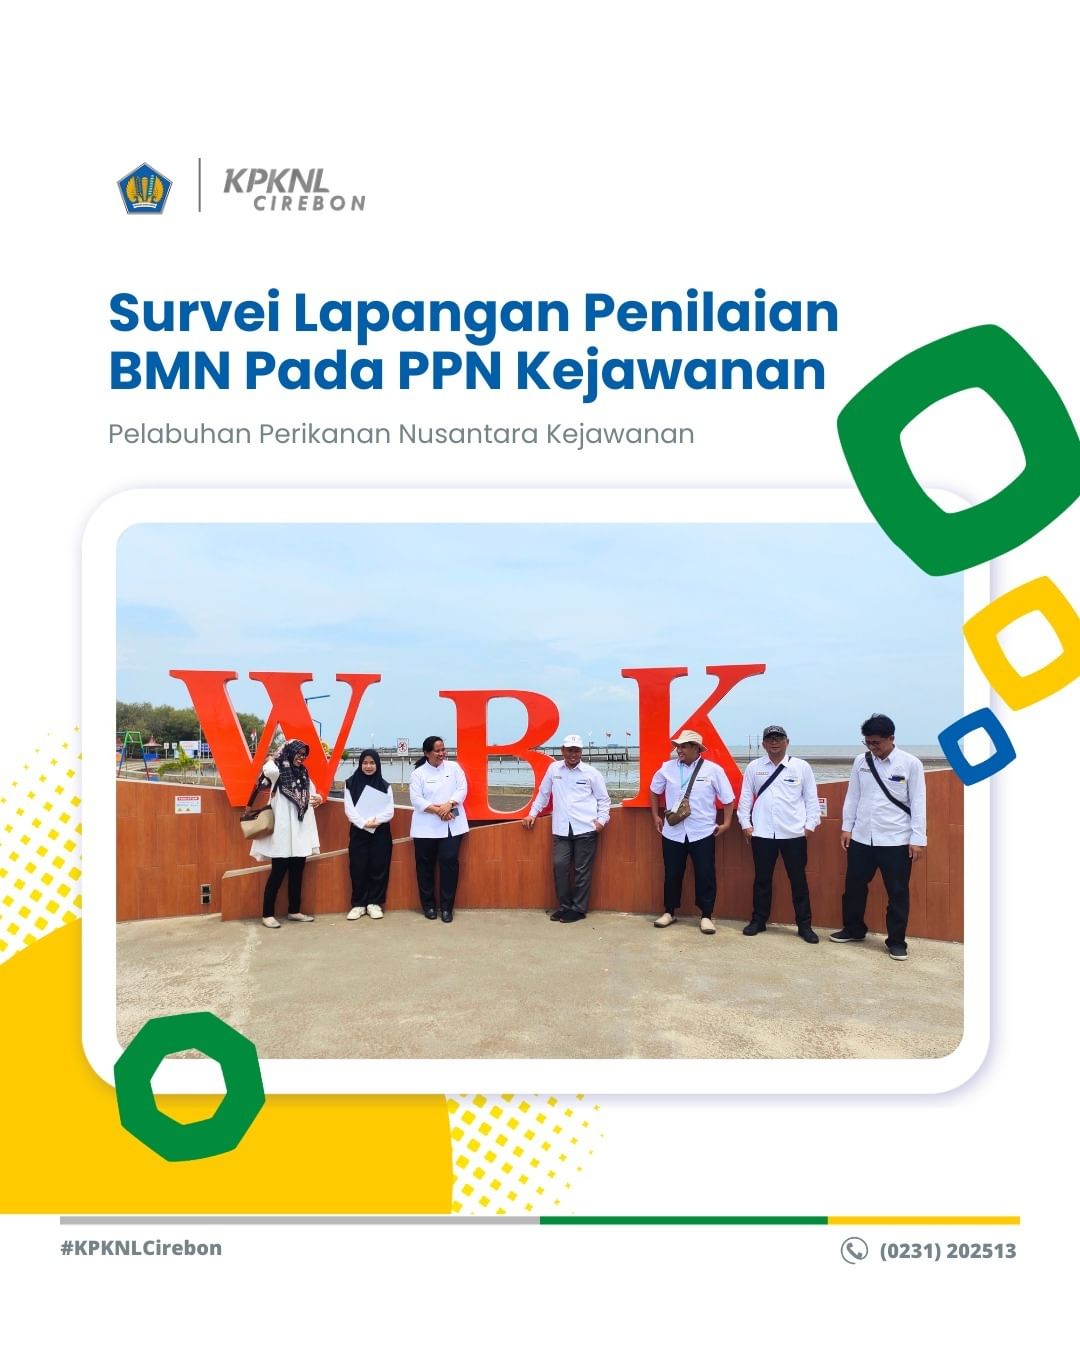 Survei Lapangan Dalam Rangka Penilaian BMN Pada Satuan Kerja Pelabuhan Perikanan Nusantara (PPN) Kejawanan